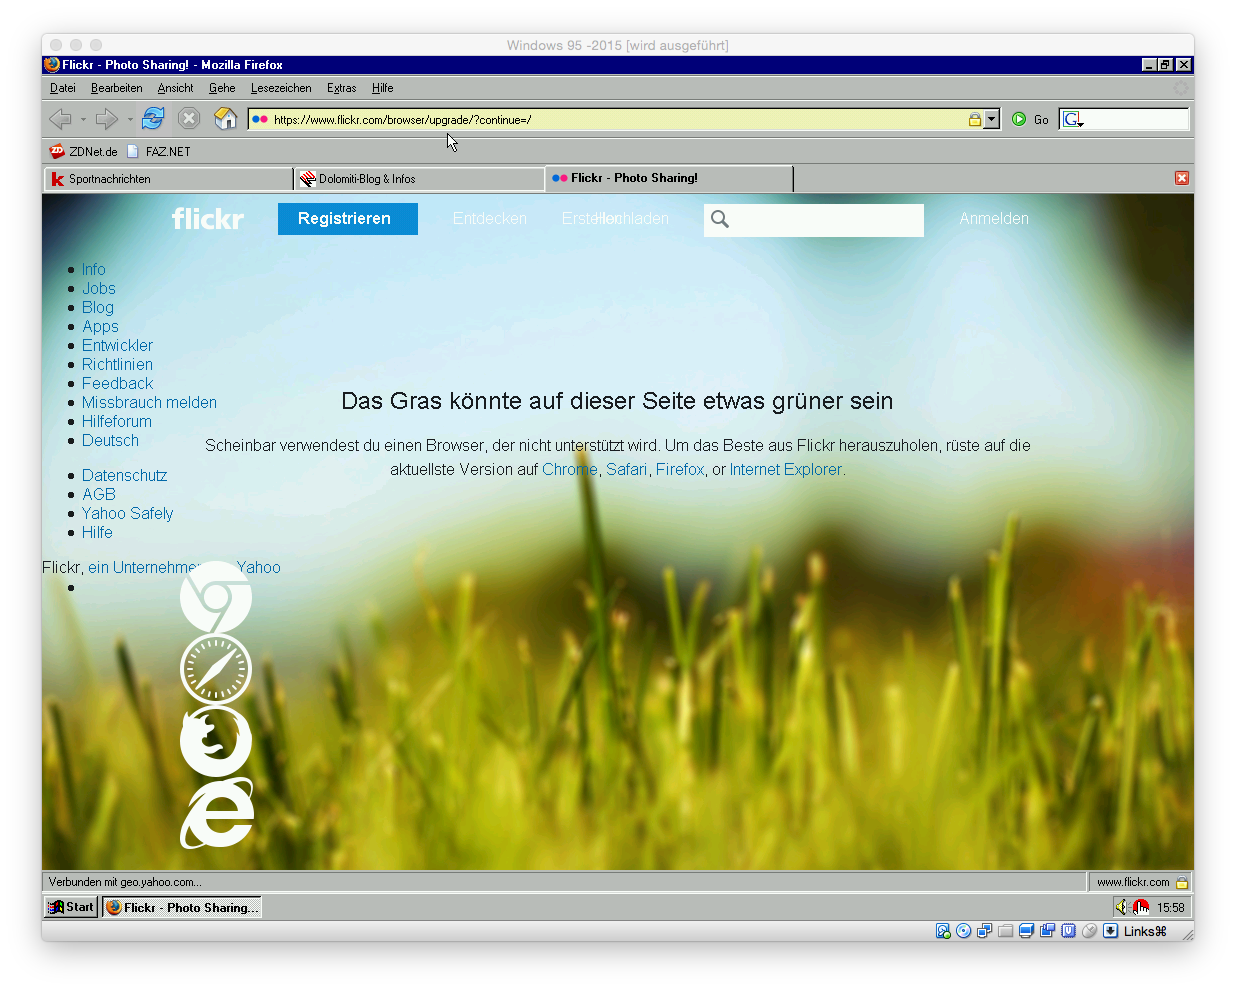 Neuere Versionen von Firefox lassen sich leider nicht installieren, sodass Flickr auch nur anmerken kann \"Das Gras könnte auf dieser Seite etwas grüner sein\". <br>siehe auch: <a href=\"https://www.zdnet.de/88242467/30-jahre-windows-rueckblick-in-bildern/#image=1\" target=\"_blank\">30 Jahre Windows: Rückblick in Bildern</a>